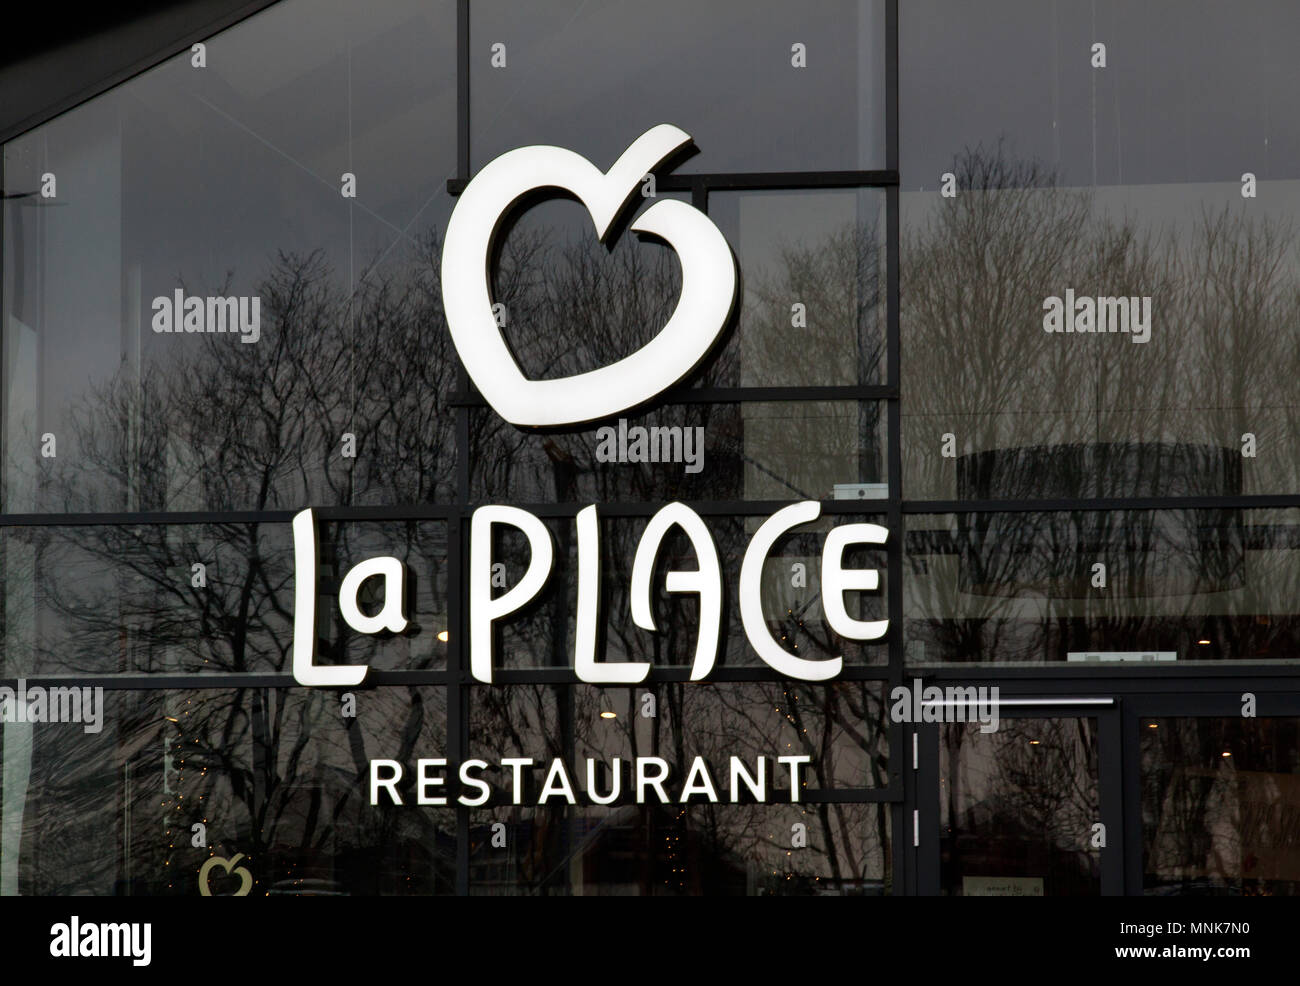 Zoeterwoude, Pays-Bas-januari 5, 2016:La Place est une chaîne de restaurants du ministère basé aux Pays-Bas, la chaîne de magasin V & D. Banque D'Images